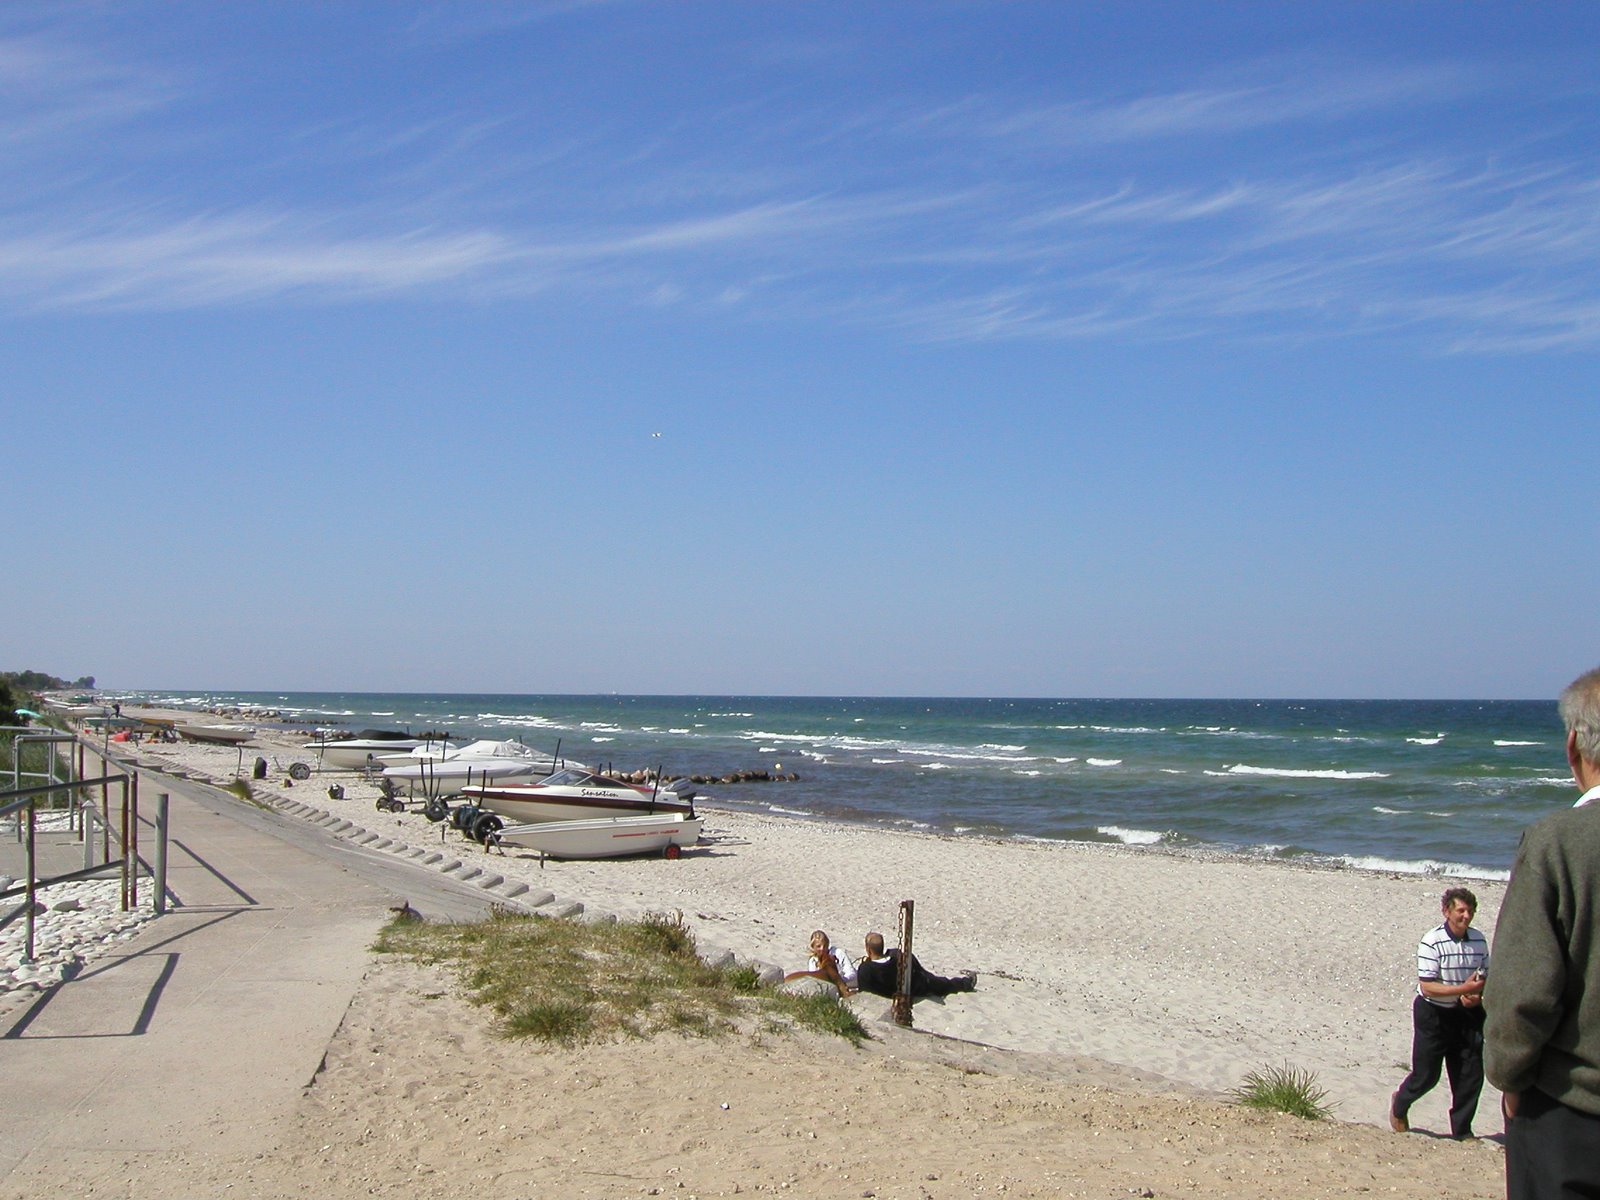 Zdjęcie Hasmark Beach - popularne miejsce wśród znawców relaksu